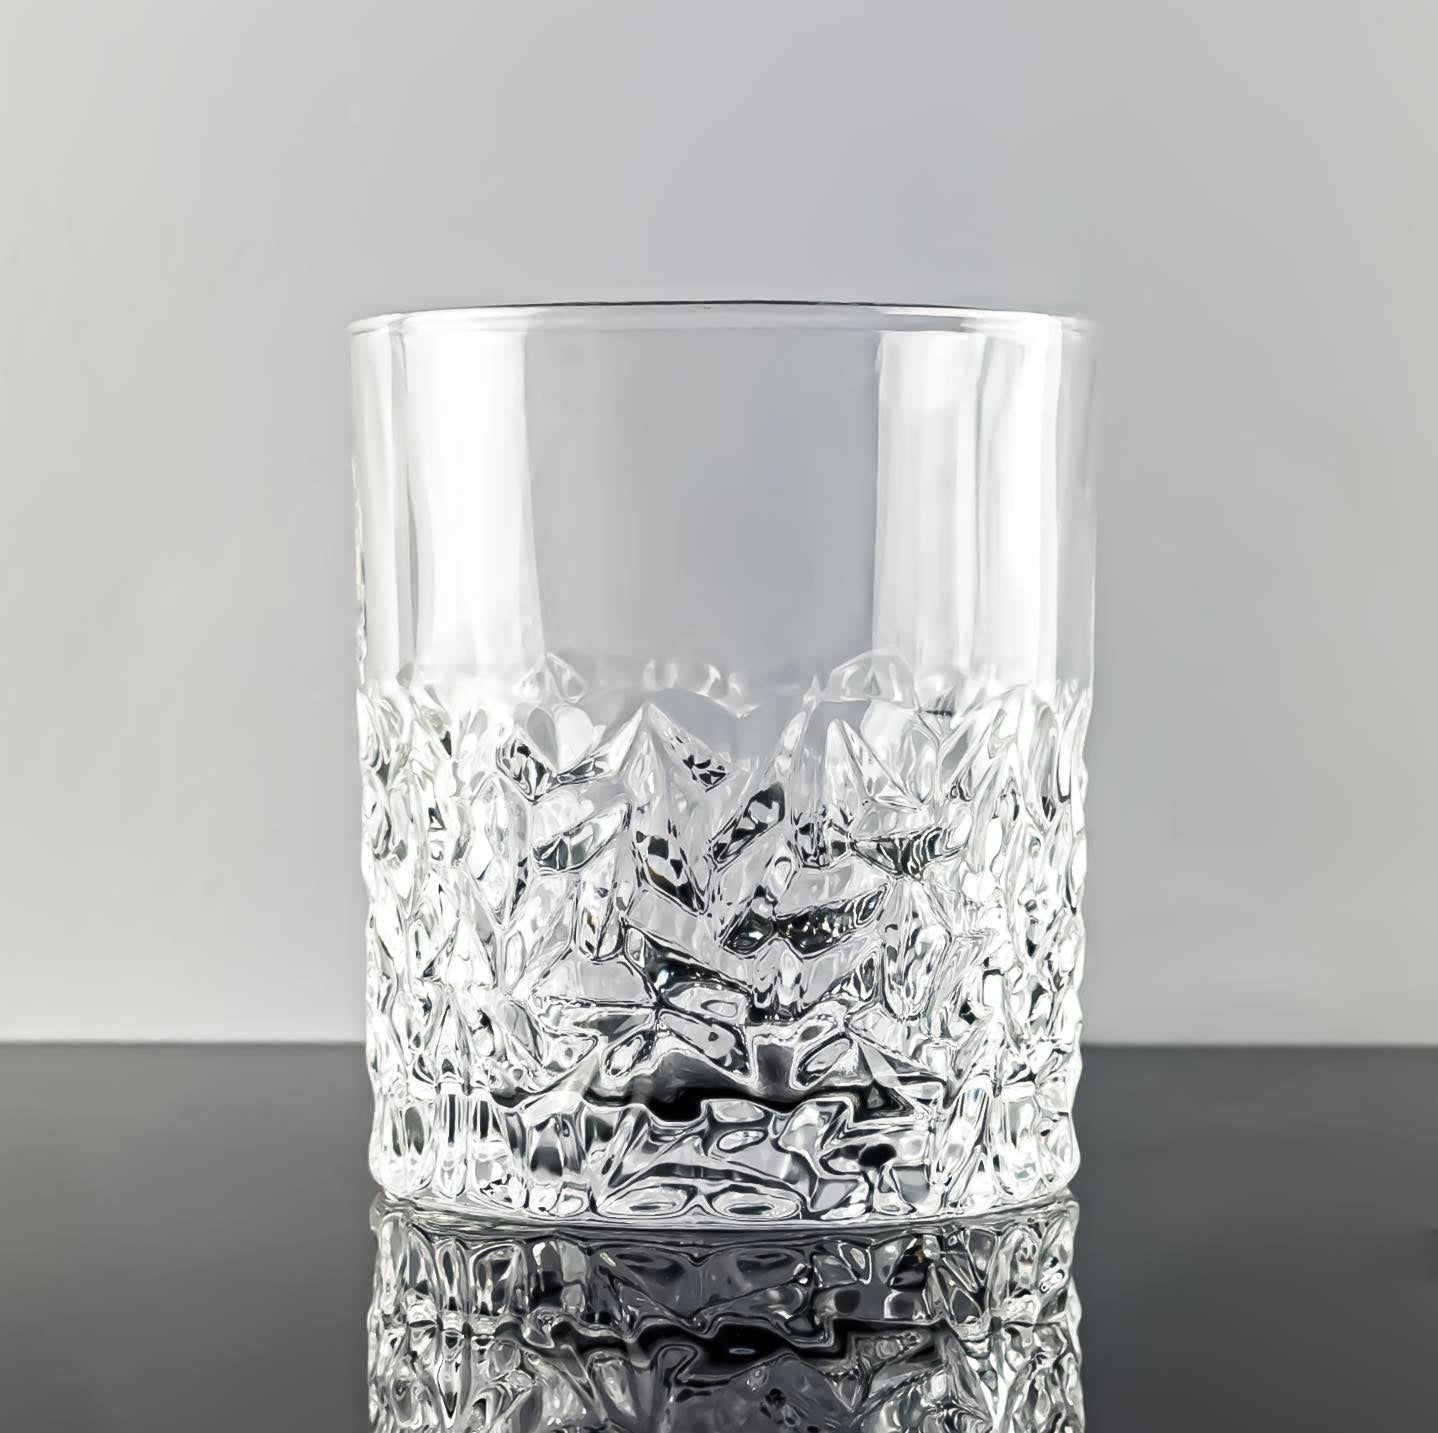 Frosted Bottom Heavy Based Whisky Glass - Solkatt Designs 